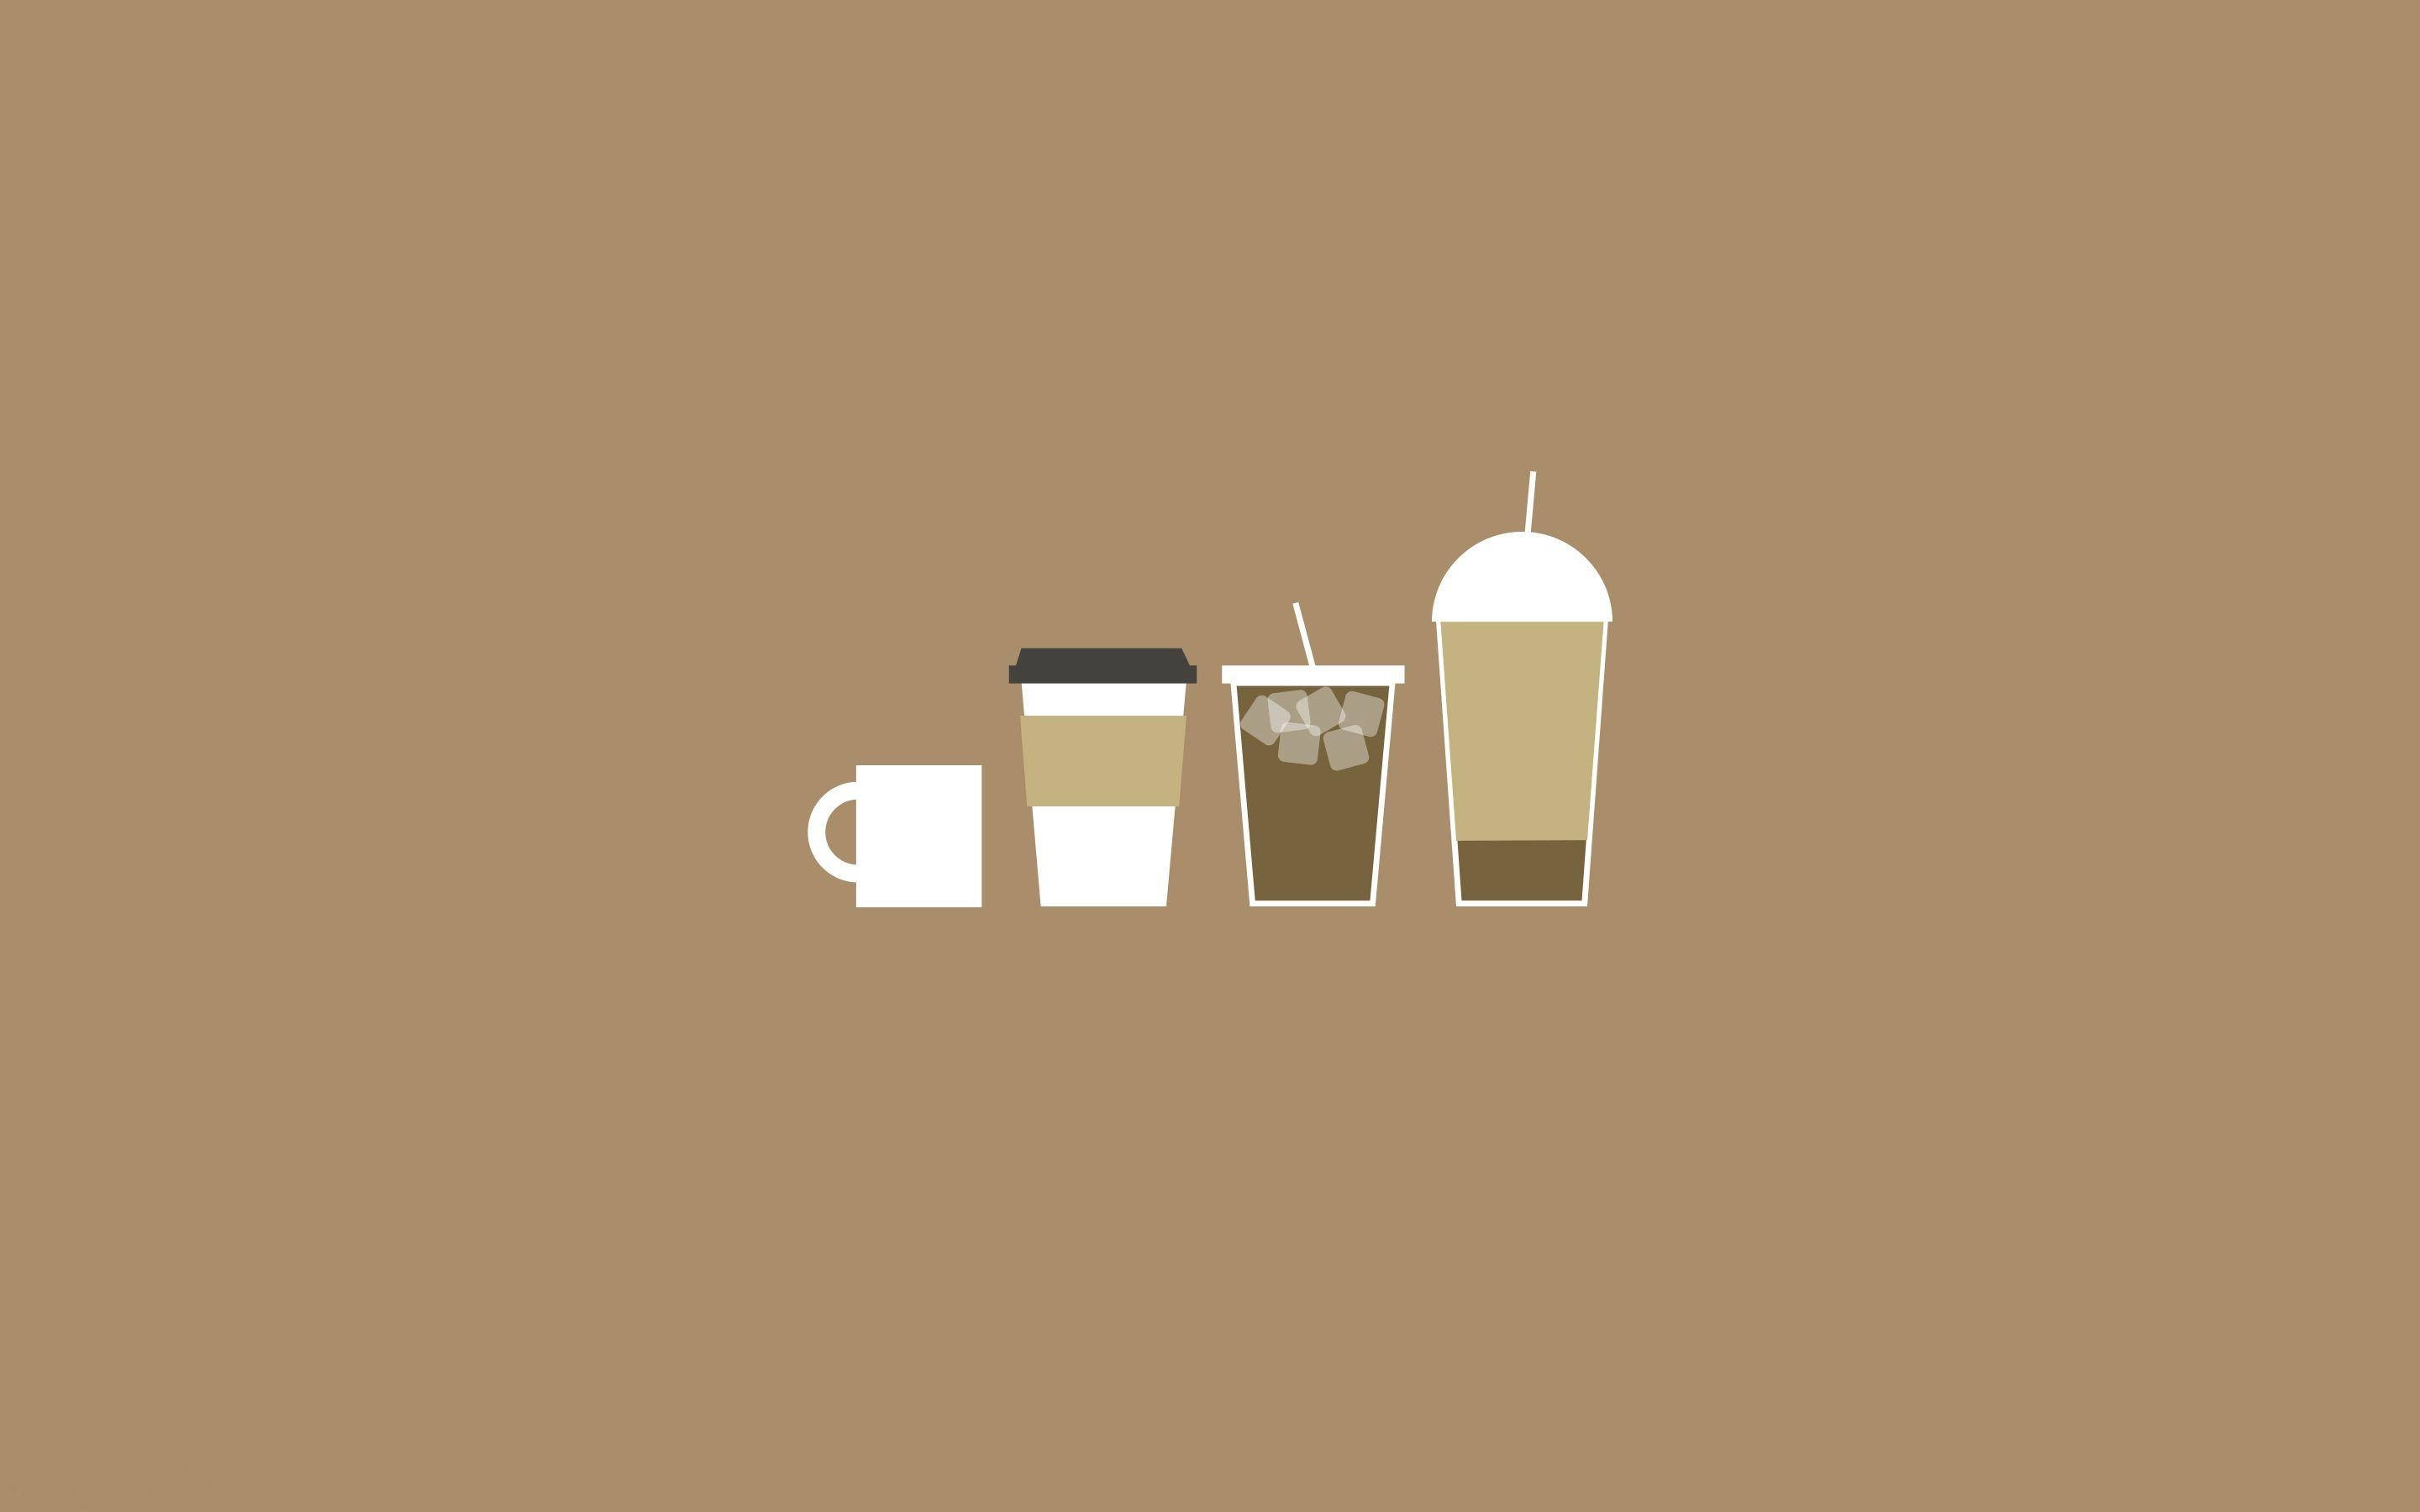 Brauneästhetische Kaffee-illustration Laptop Wallpaper